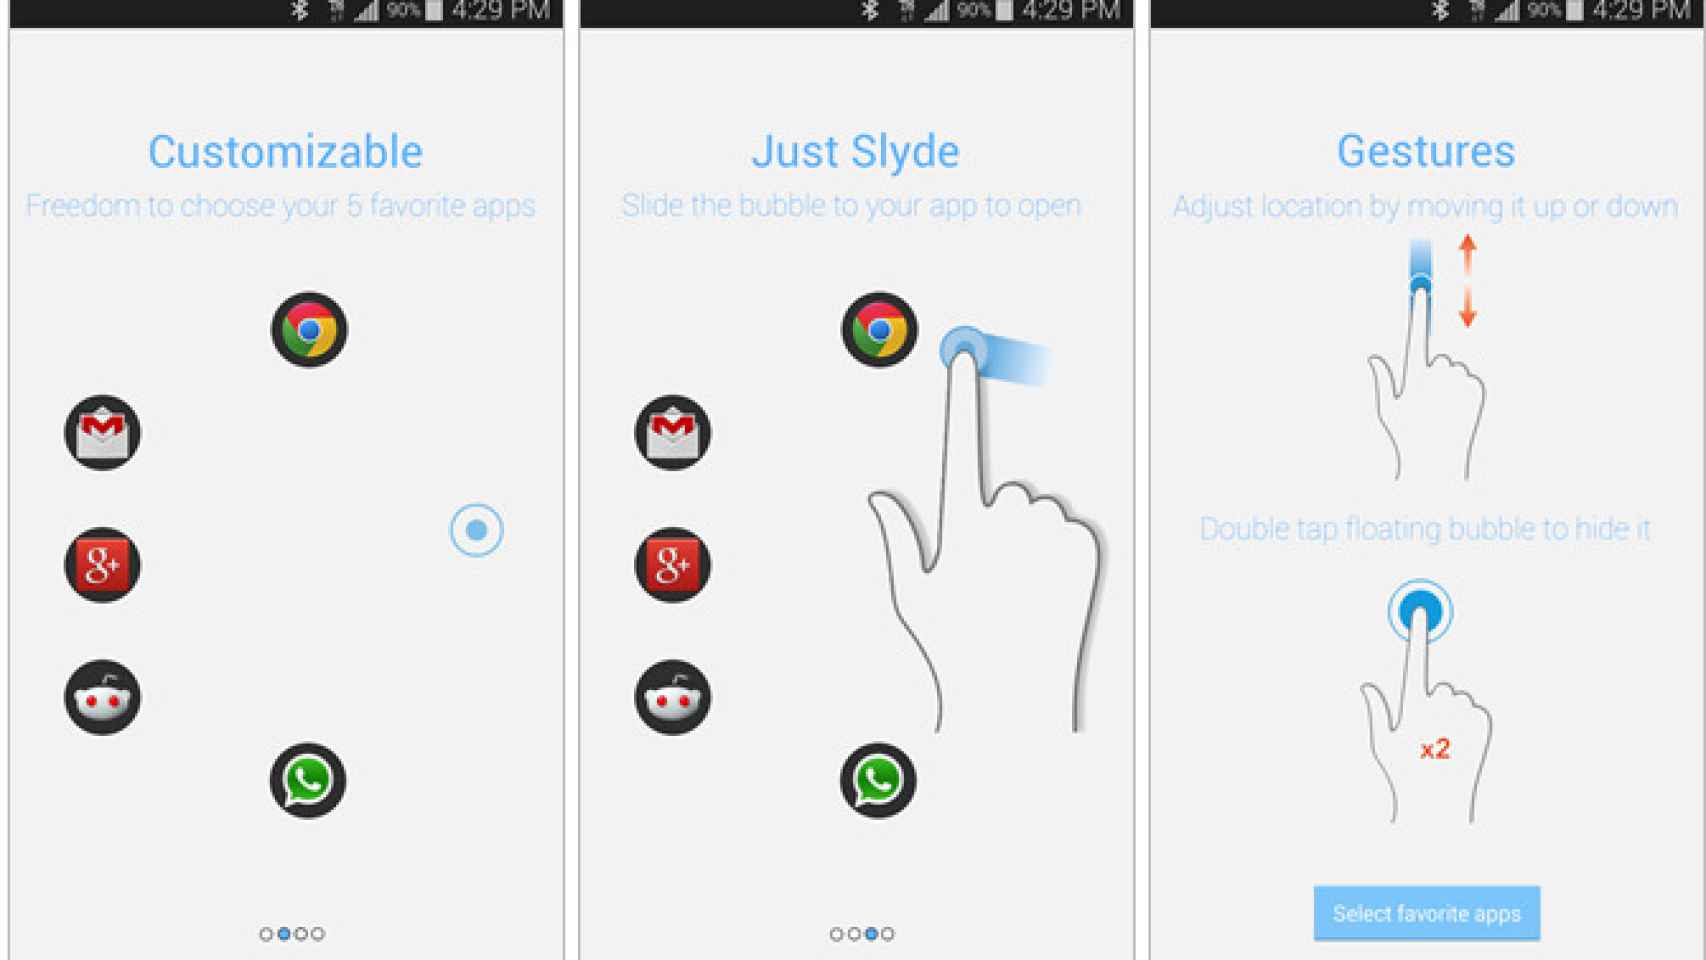 Slyde, burbujas flotantes para acceder a cada una de tus apps favoritas